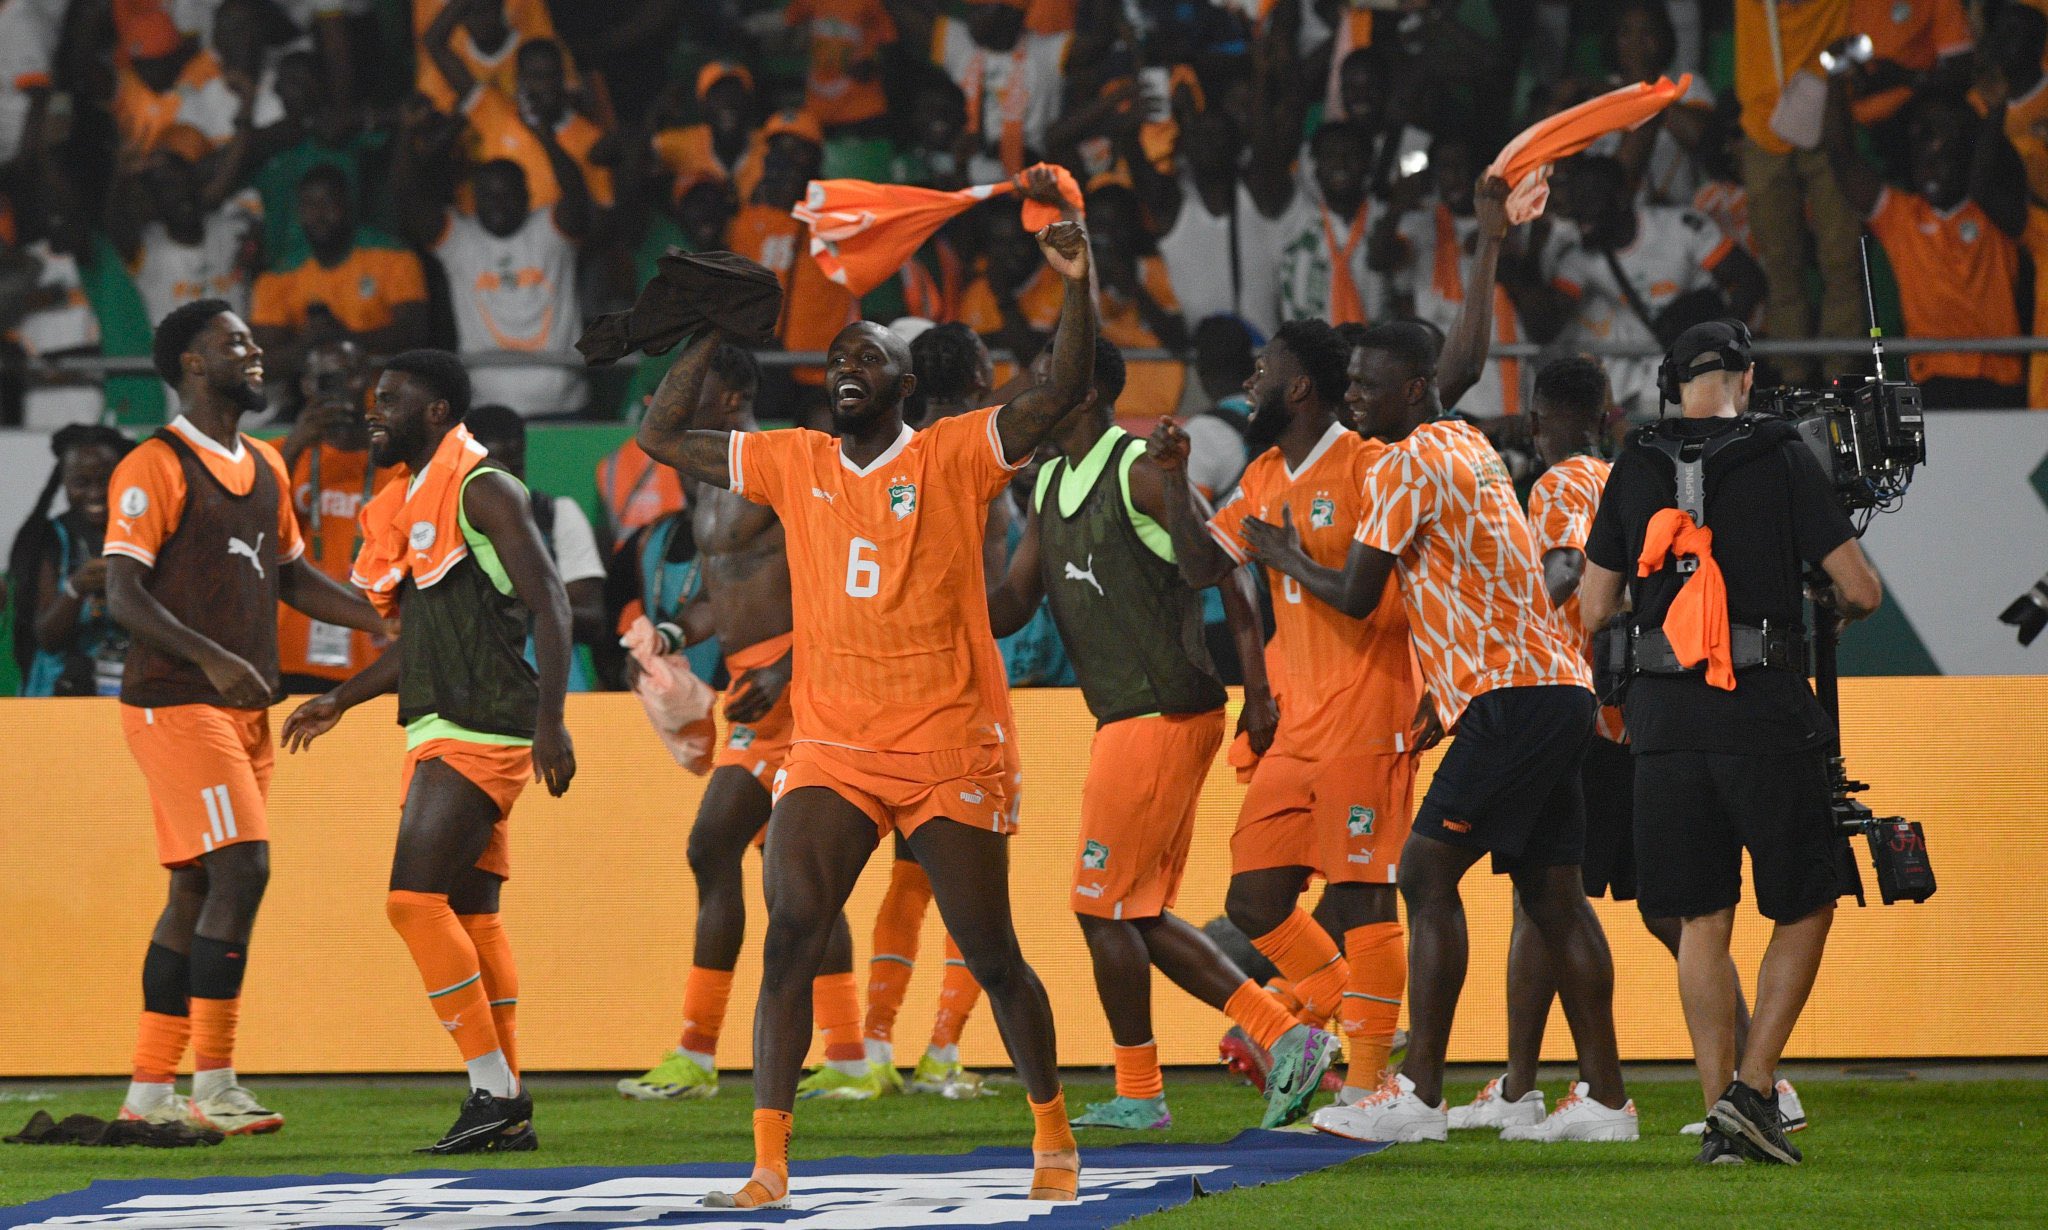 Cote d'Ivoire complete incredible comeback vs Mali to reach AFCON semis -  Ripples Nigeria